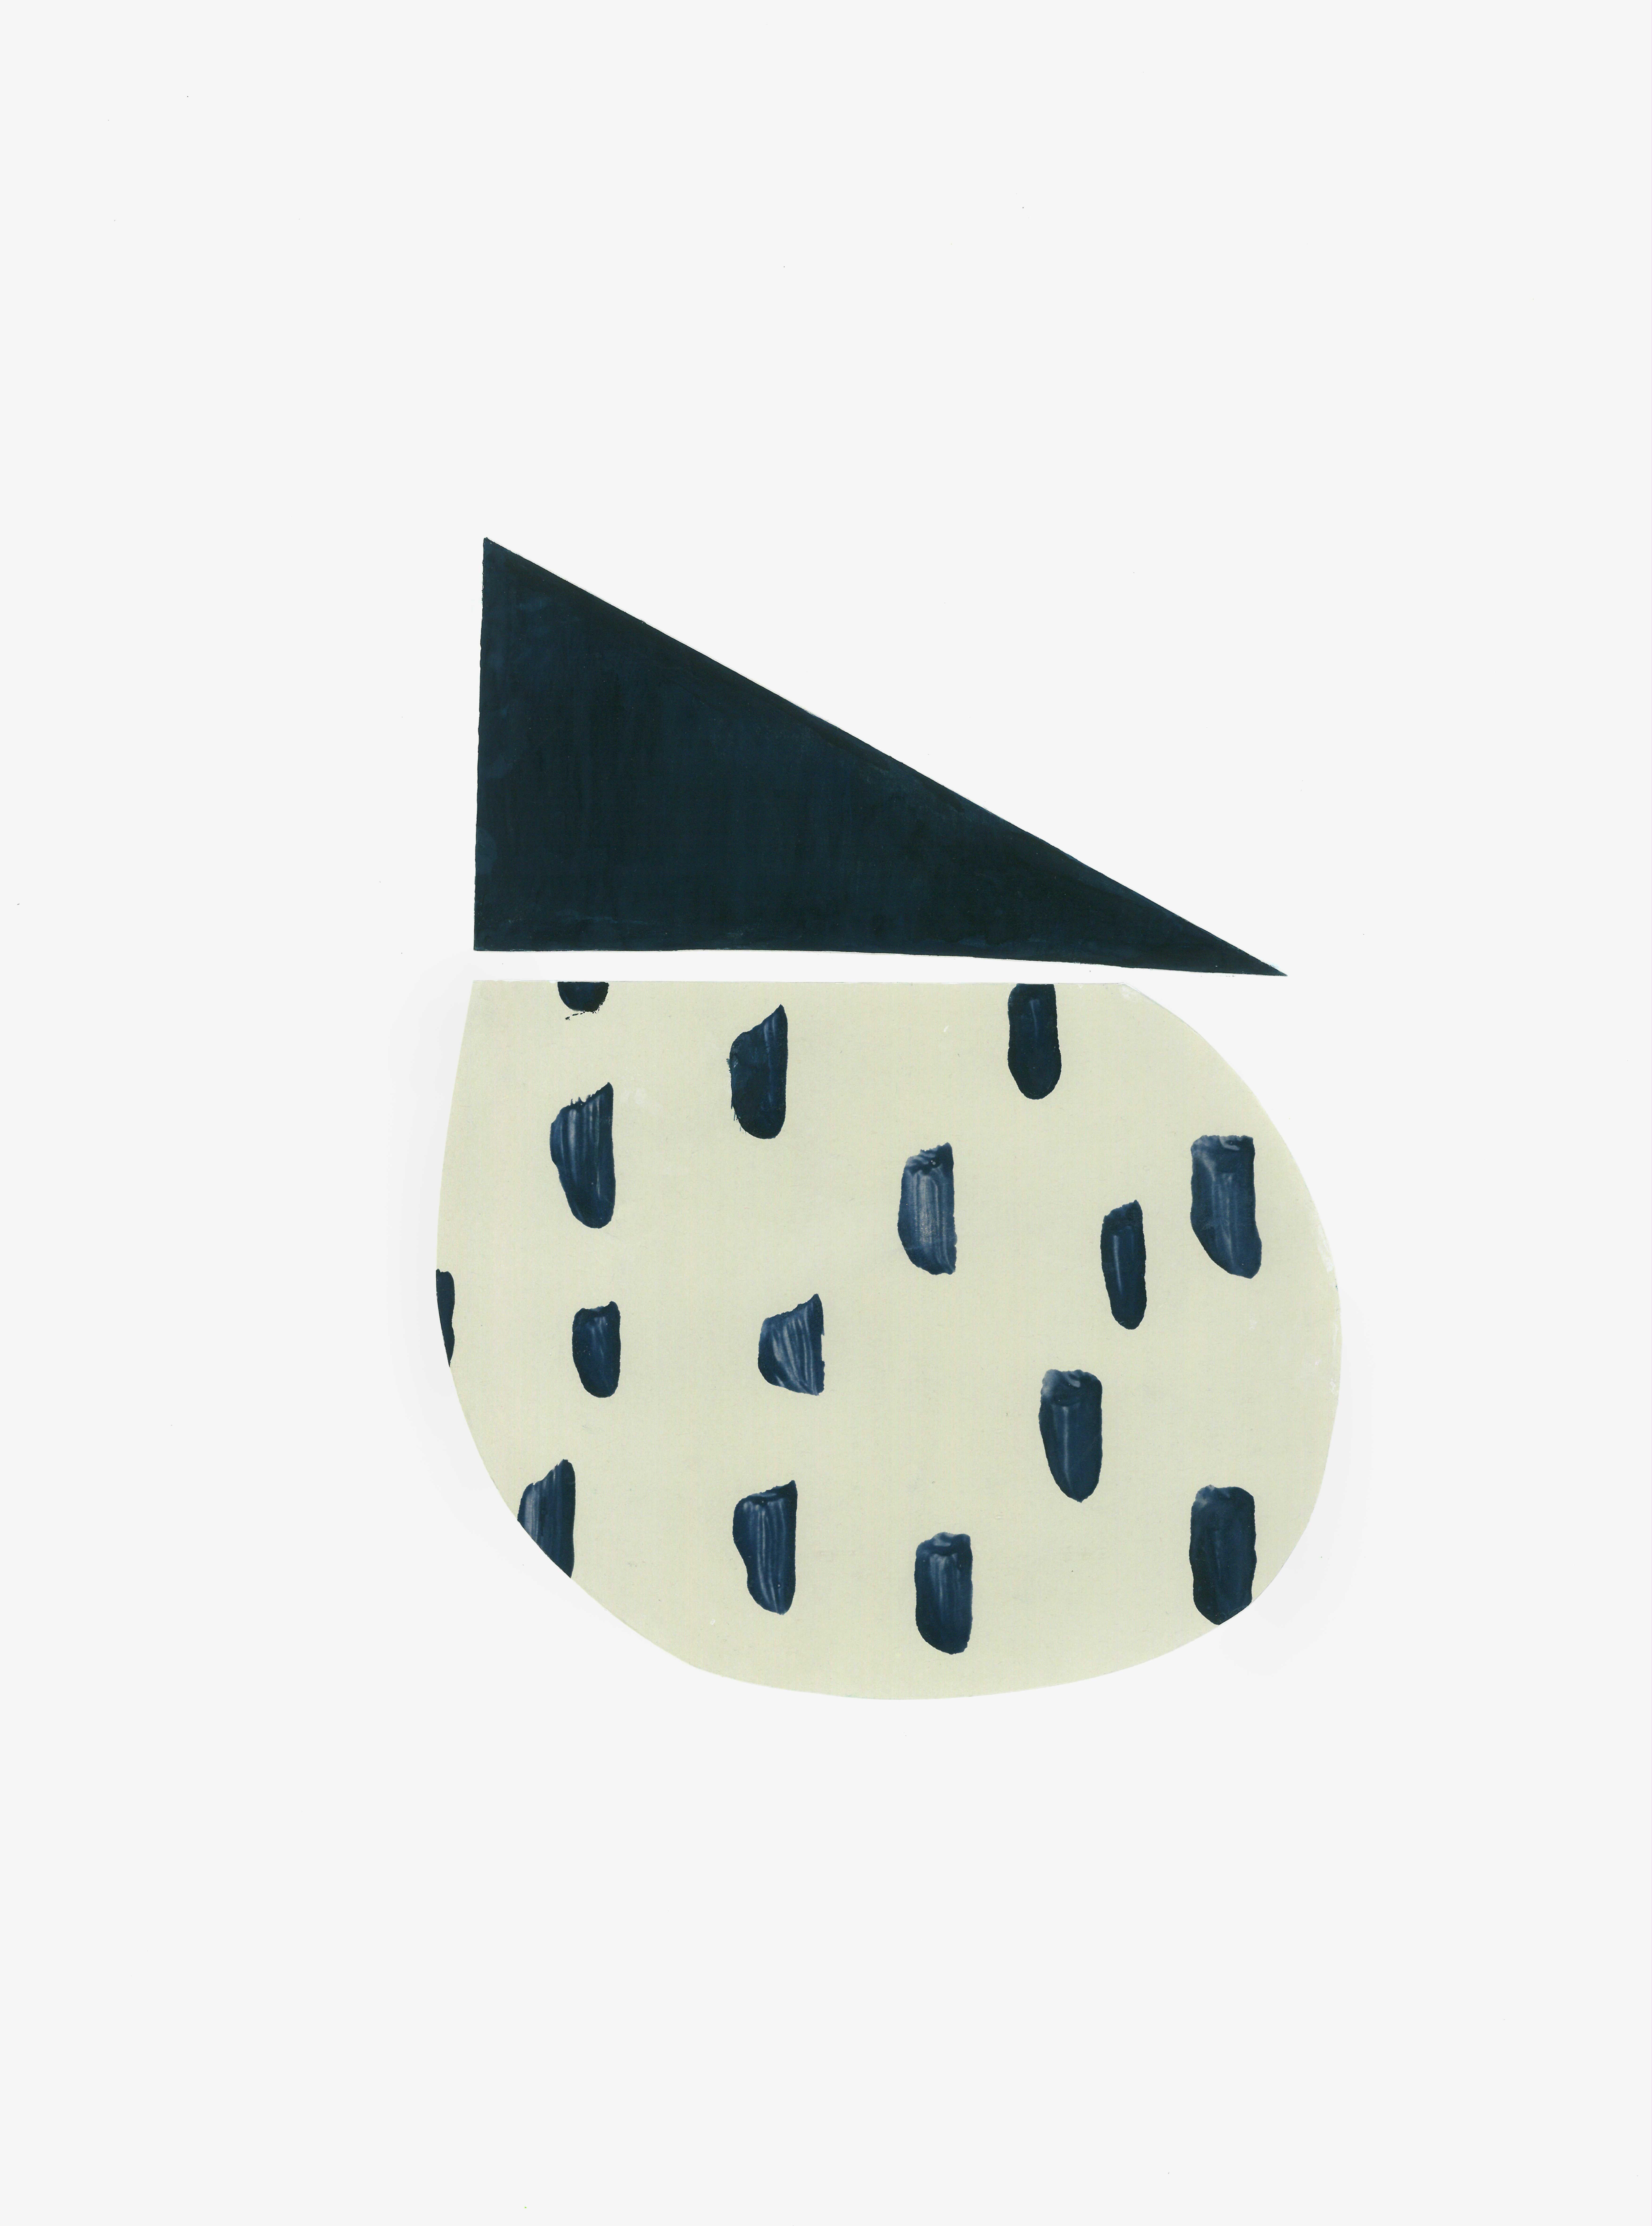 Abstract Drawing Amanda Andersen - Collage sur papier polkadots bleu foncé beige asymétrie géométrique abstraite moderne 